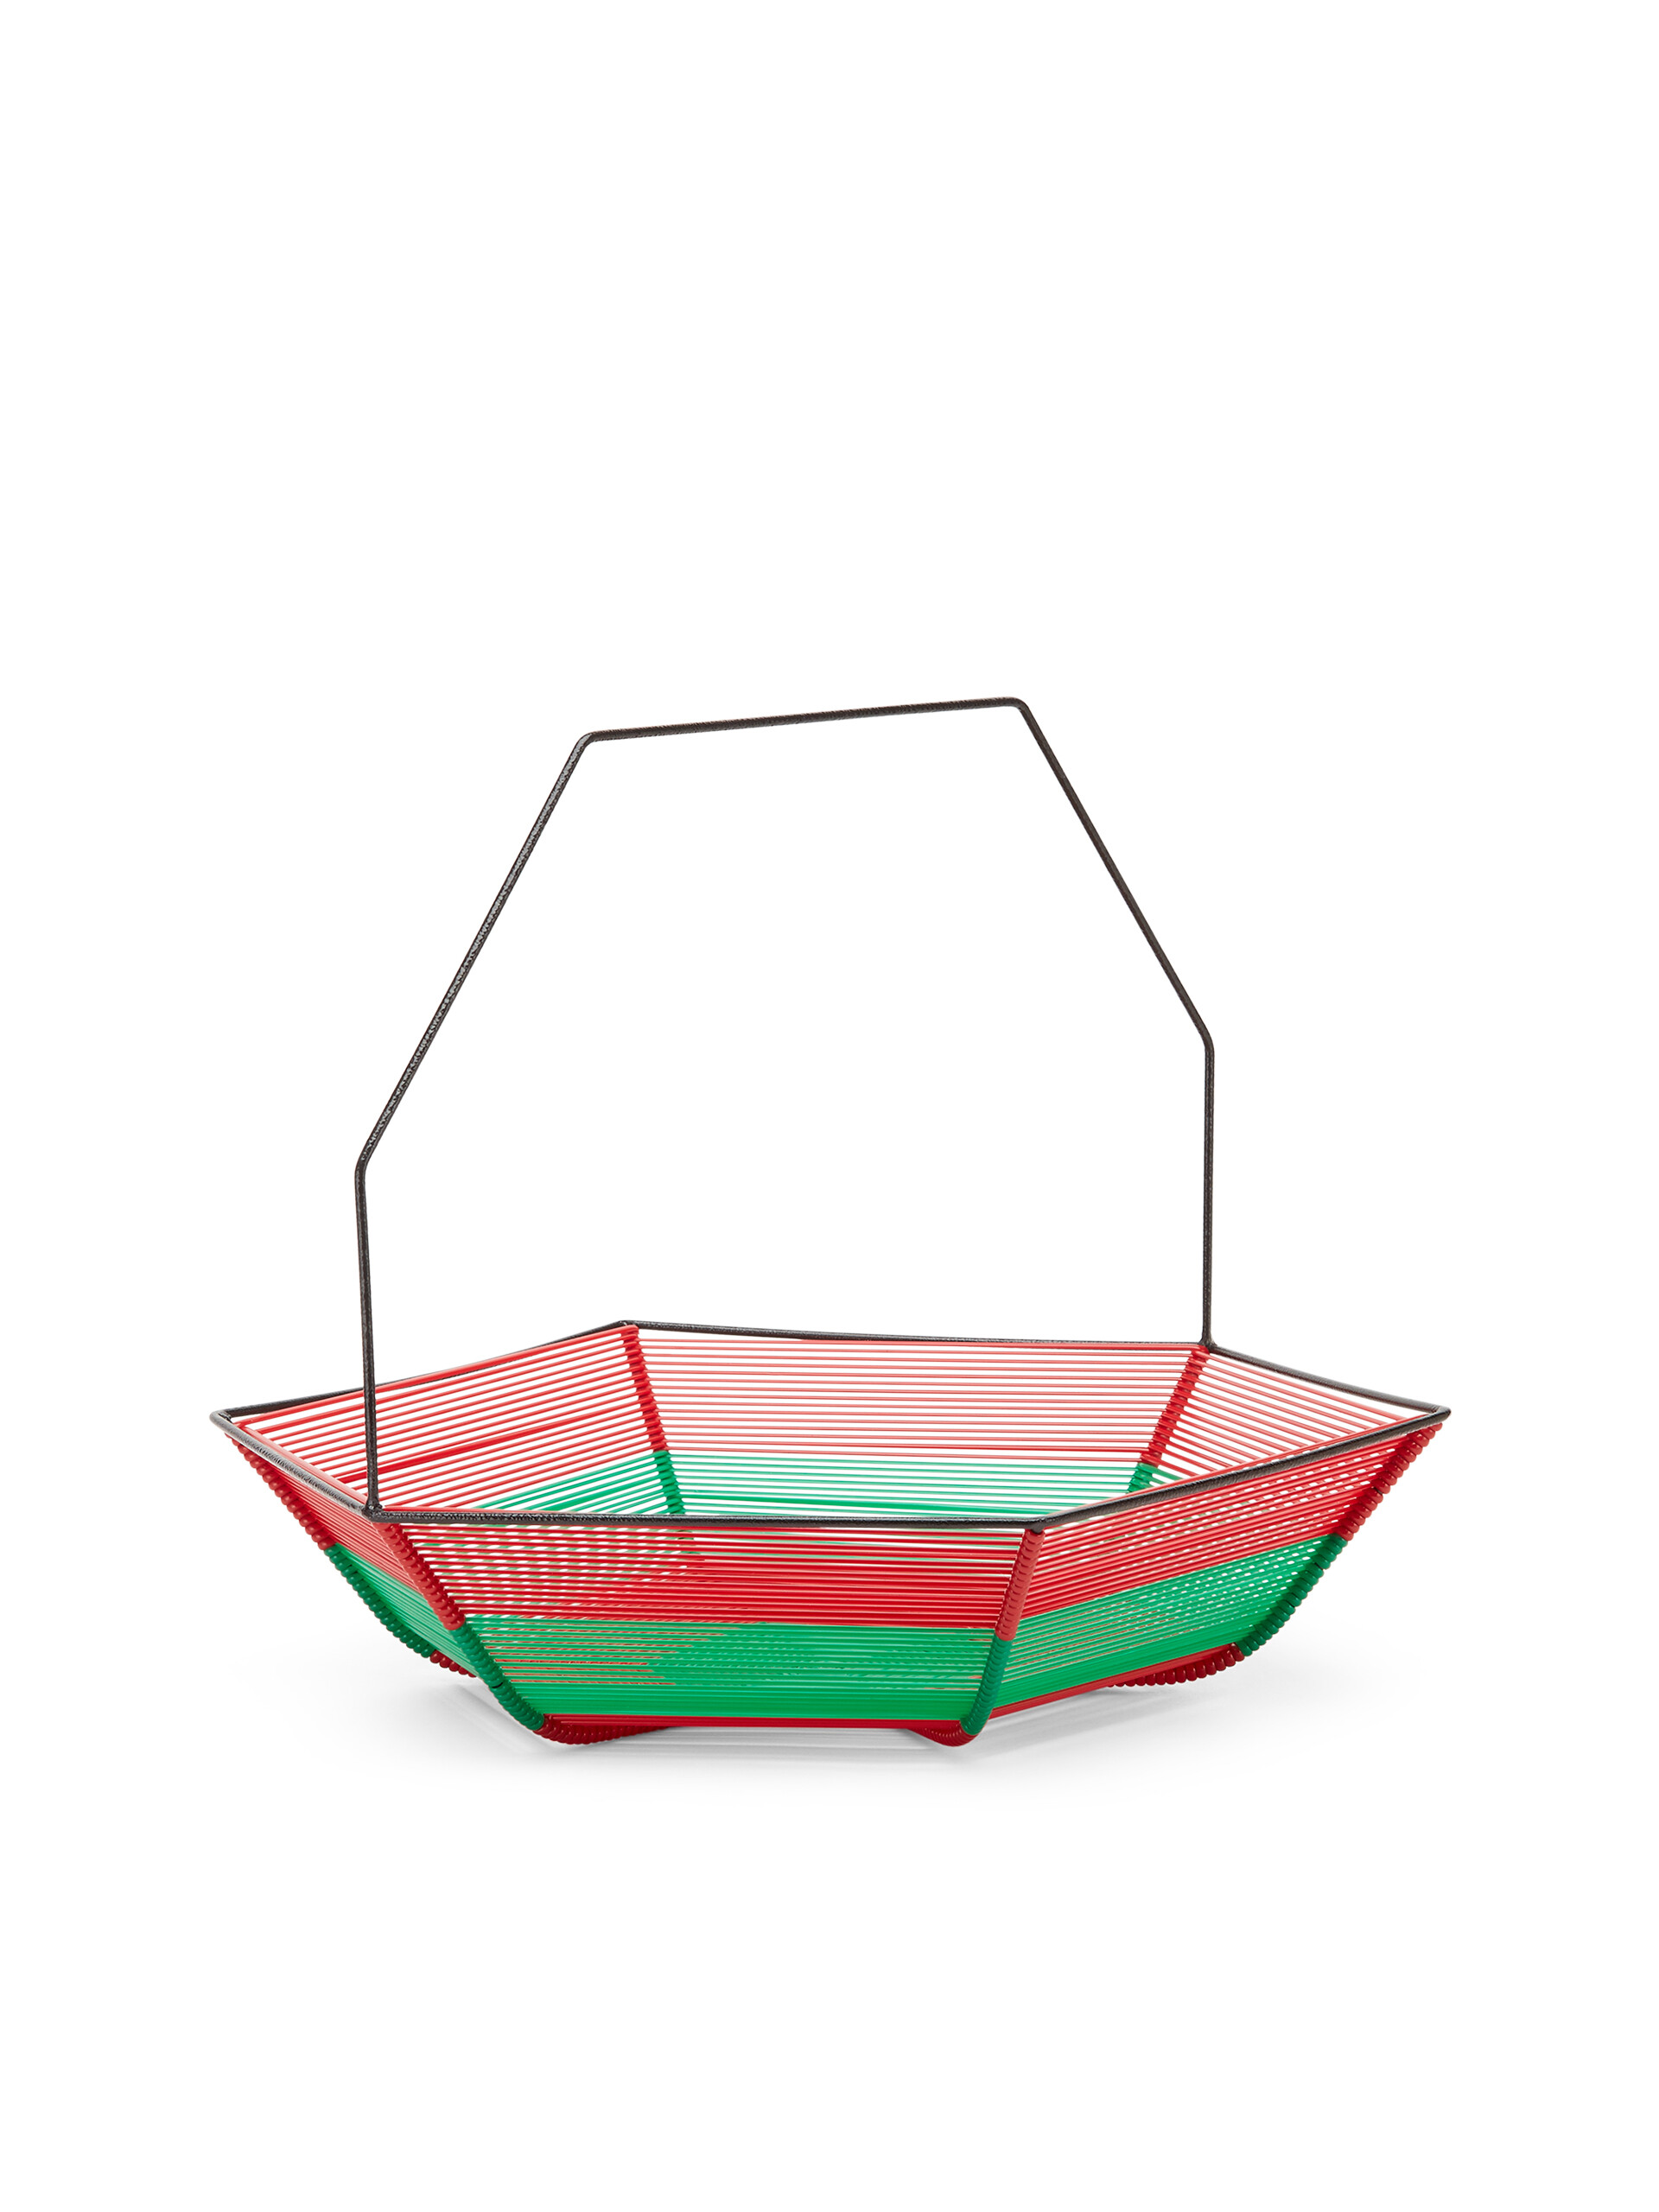 Portafrutta esagonale MARNI MARKET in ferro e PVC verde e rosso - Home Accessories - Image 2